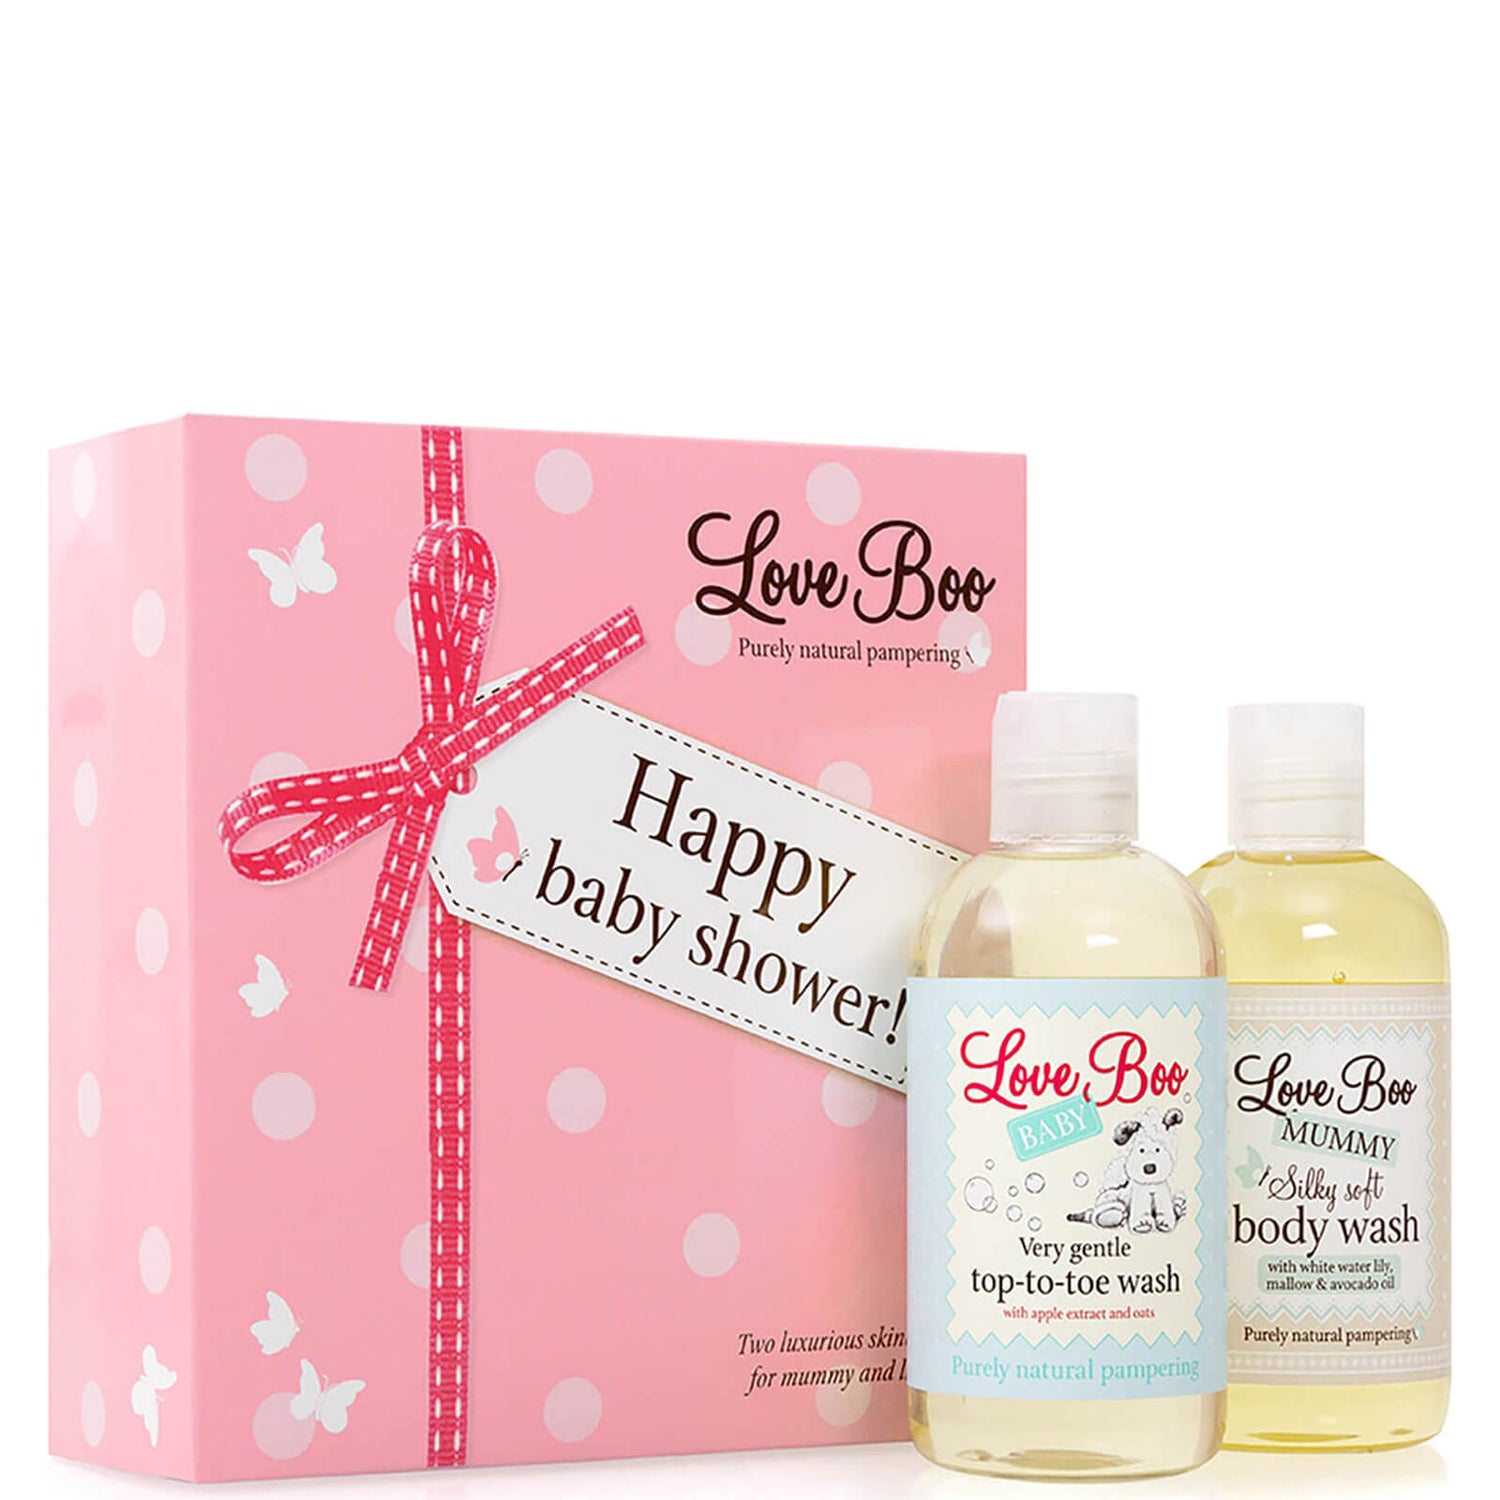 Love Boo Happy Baby Shower - Body Wash and Top To Toe(러브부 해피 베이비 샤워 - 바디 워시 앤 탑 투 토)